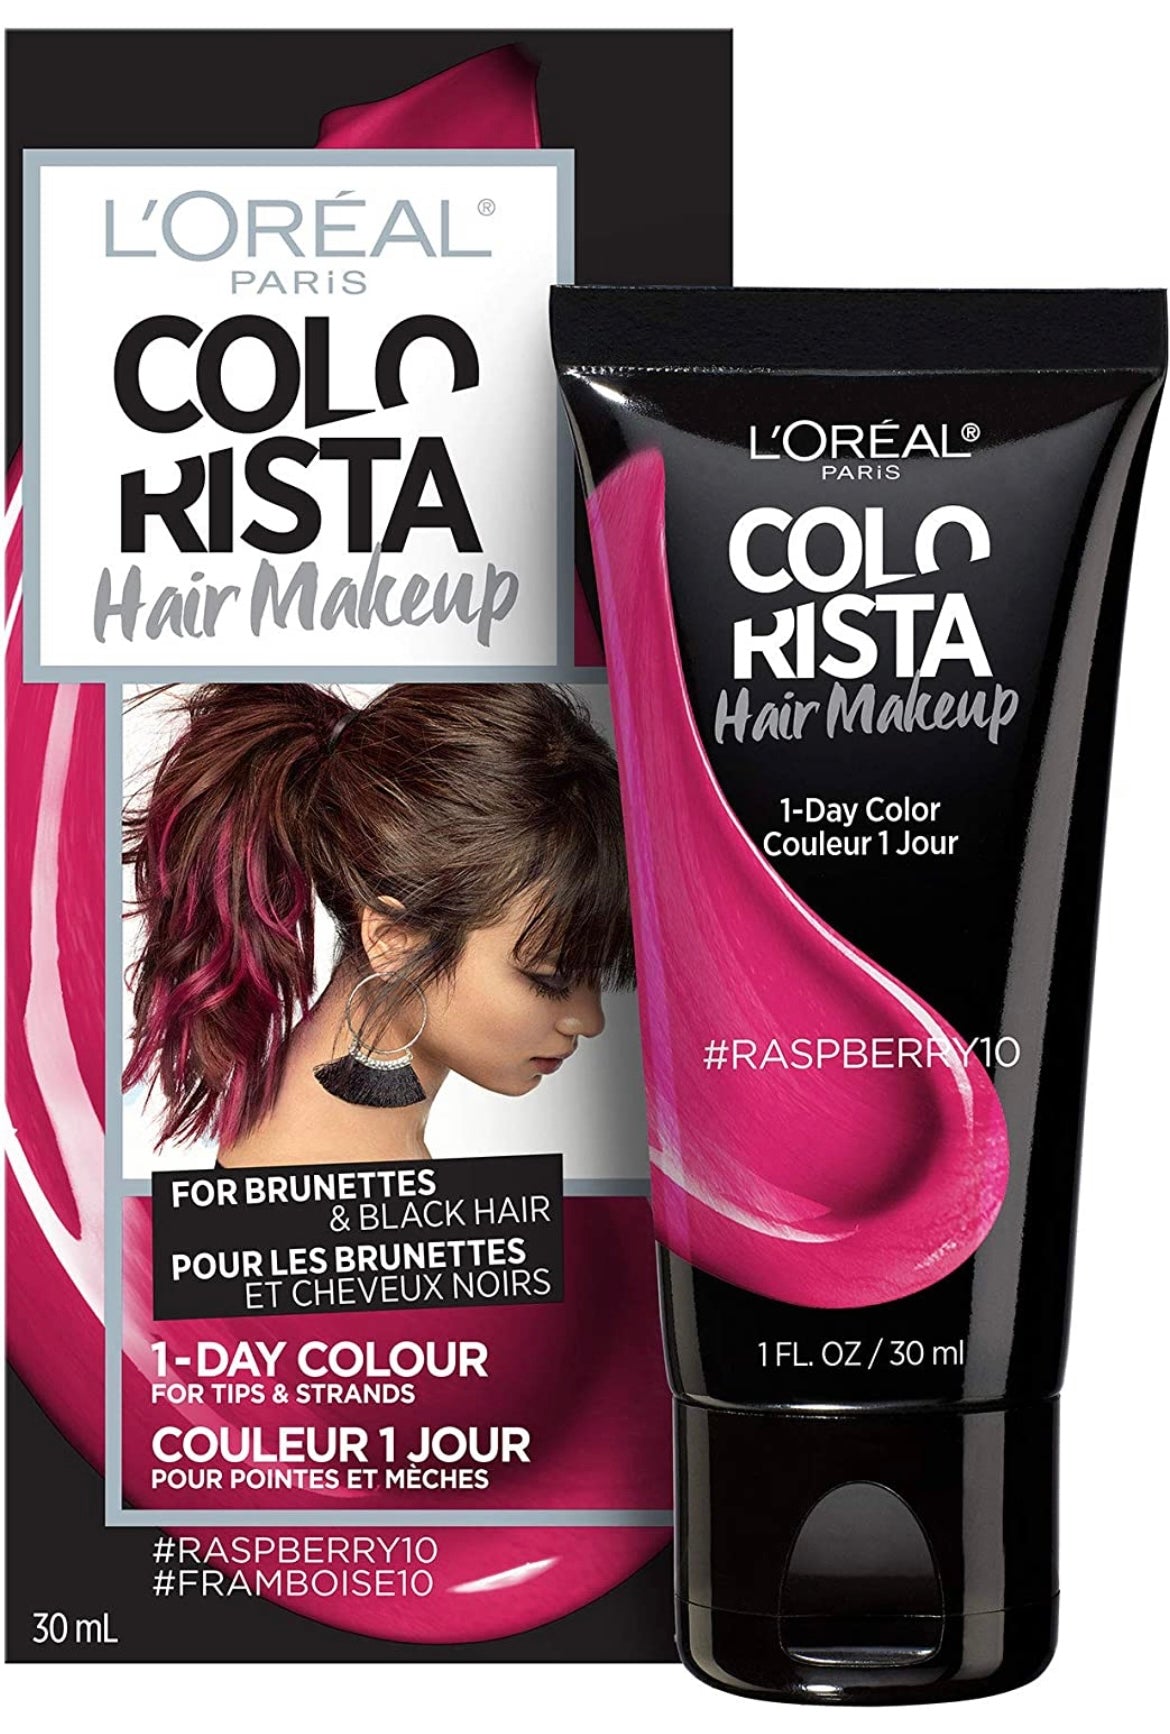 L’Oréal Paris ColoRista Hair Makeup and Remover